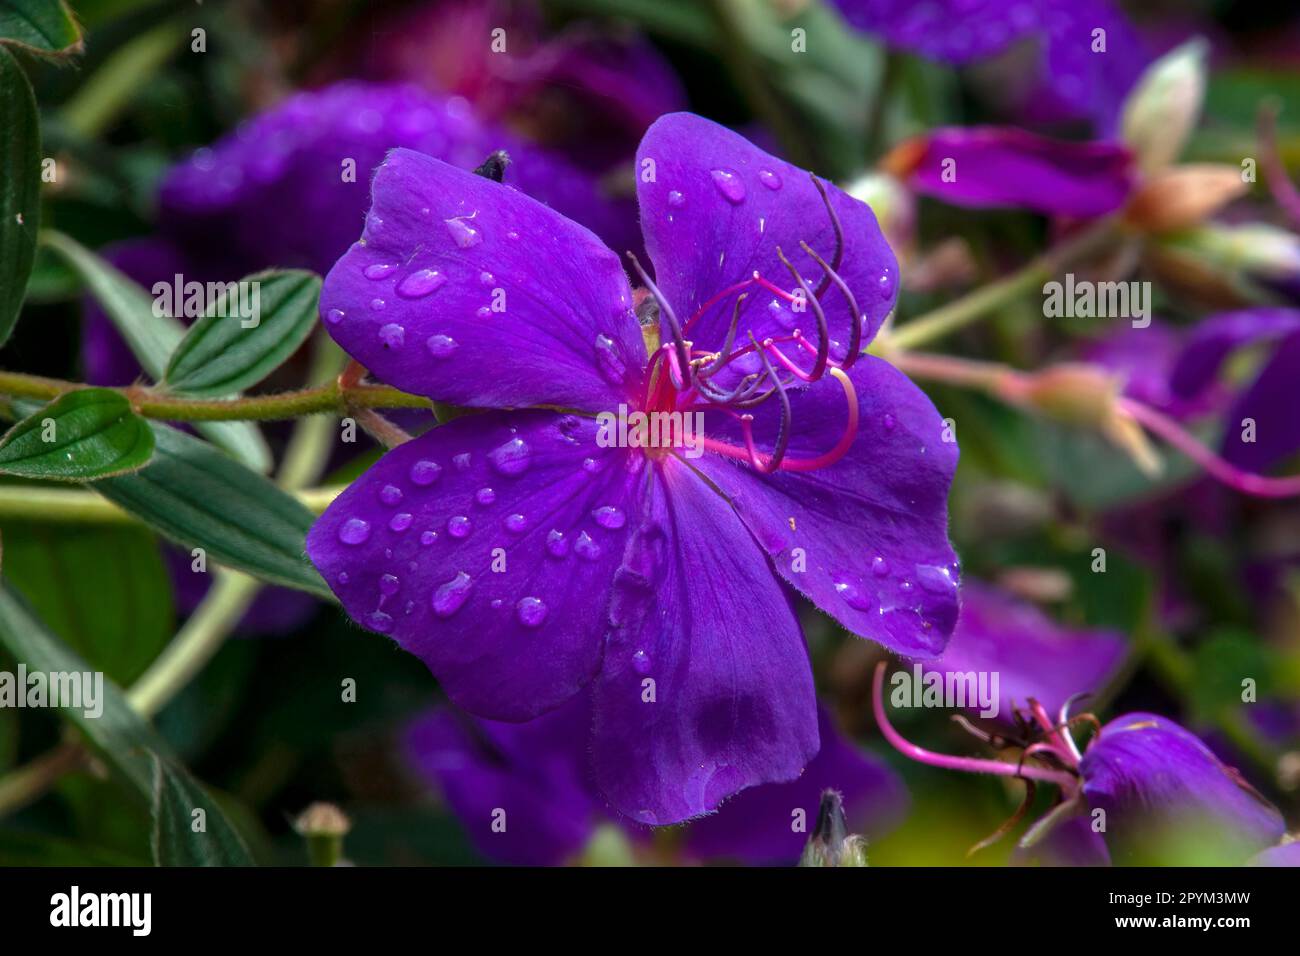 Sydney Australia, raindrops on purple flowers of a tibouchina urvilleana or lasiandra Stock Photo